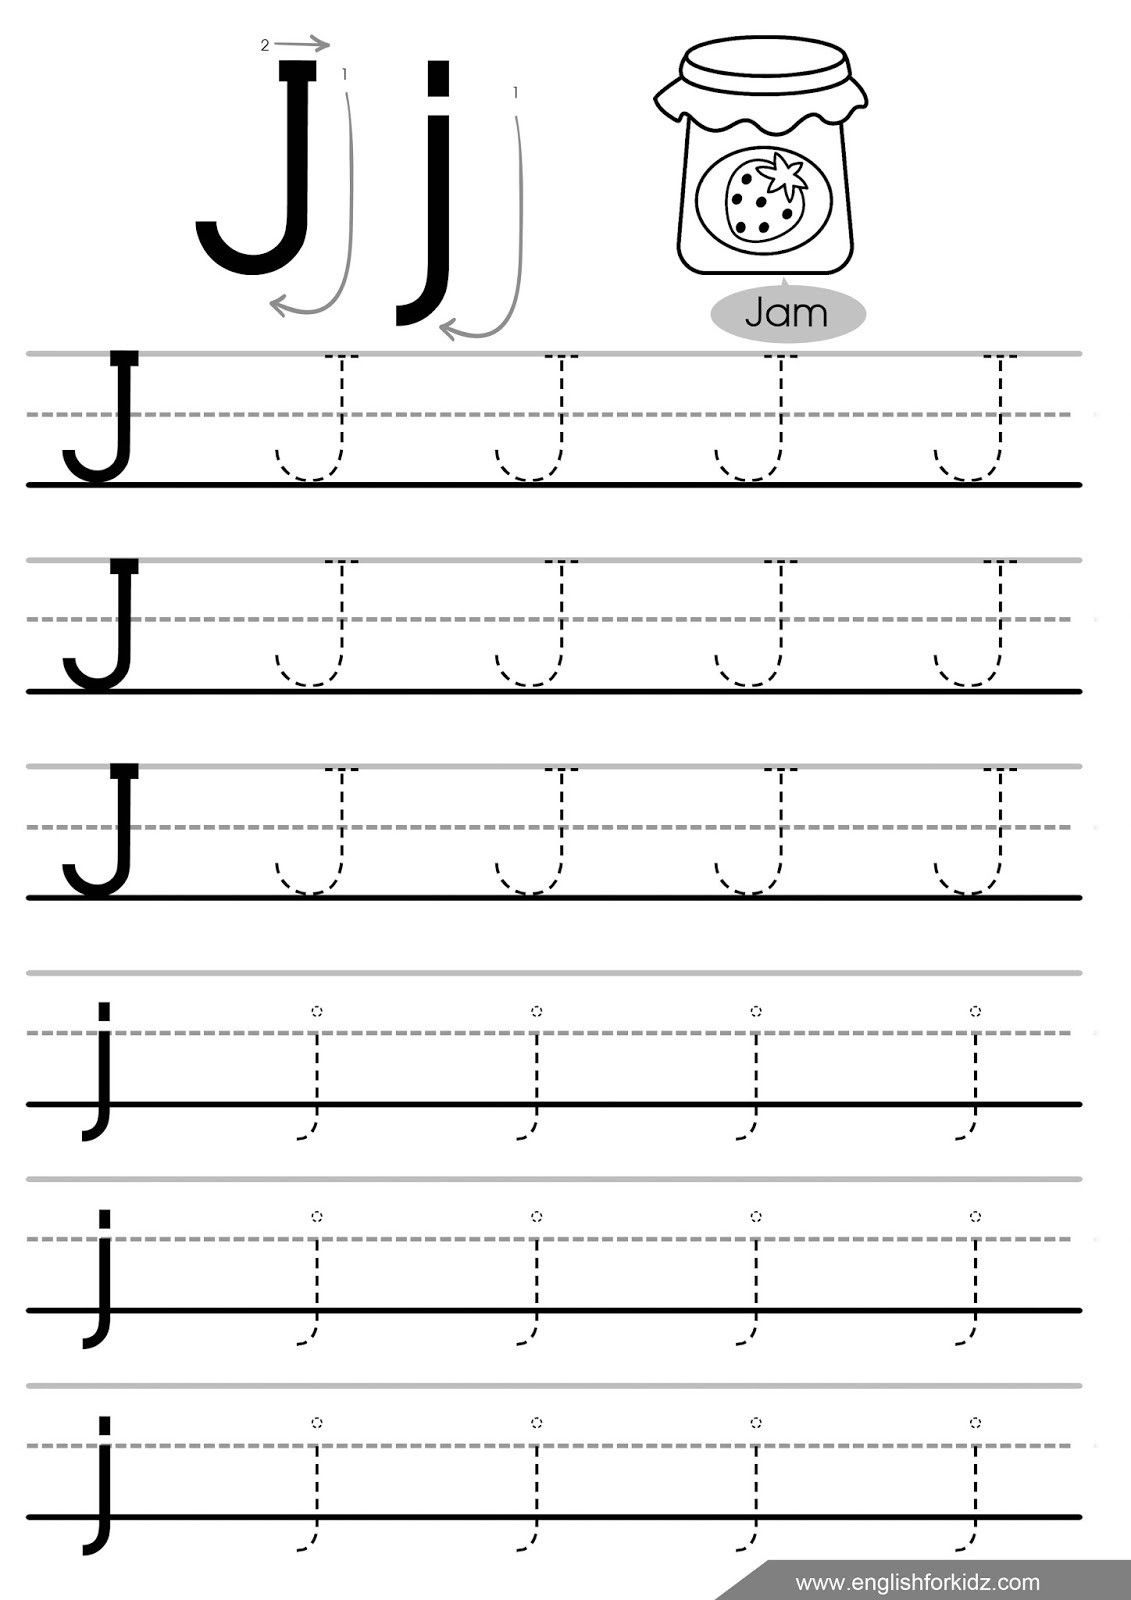 Letter J Worksheets For Kindergarten | Worksheet For pertaining to Letter J Worksheets Tracing